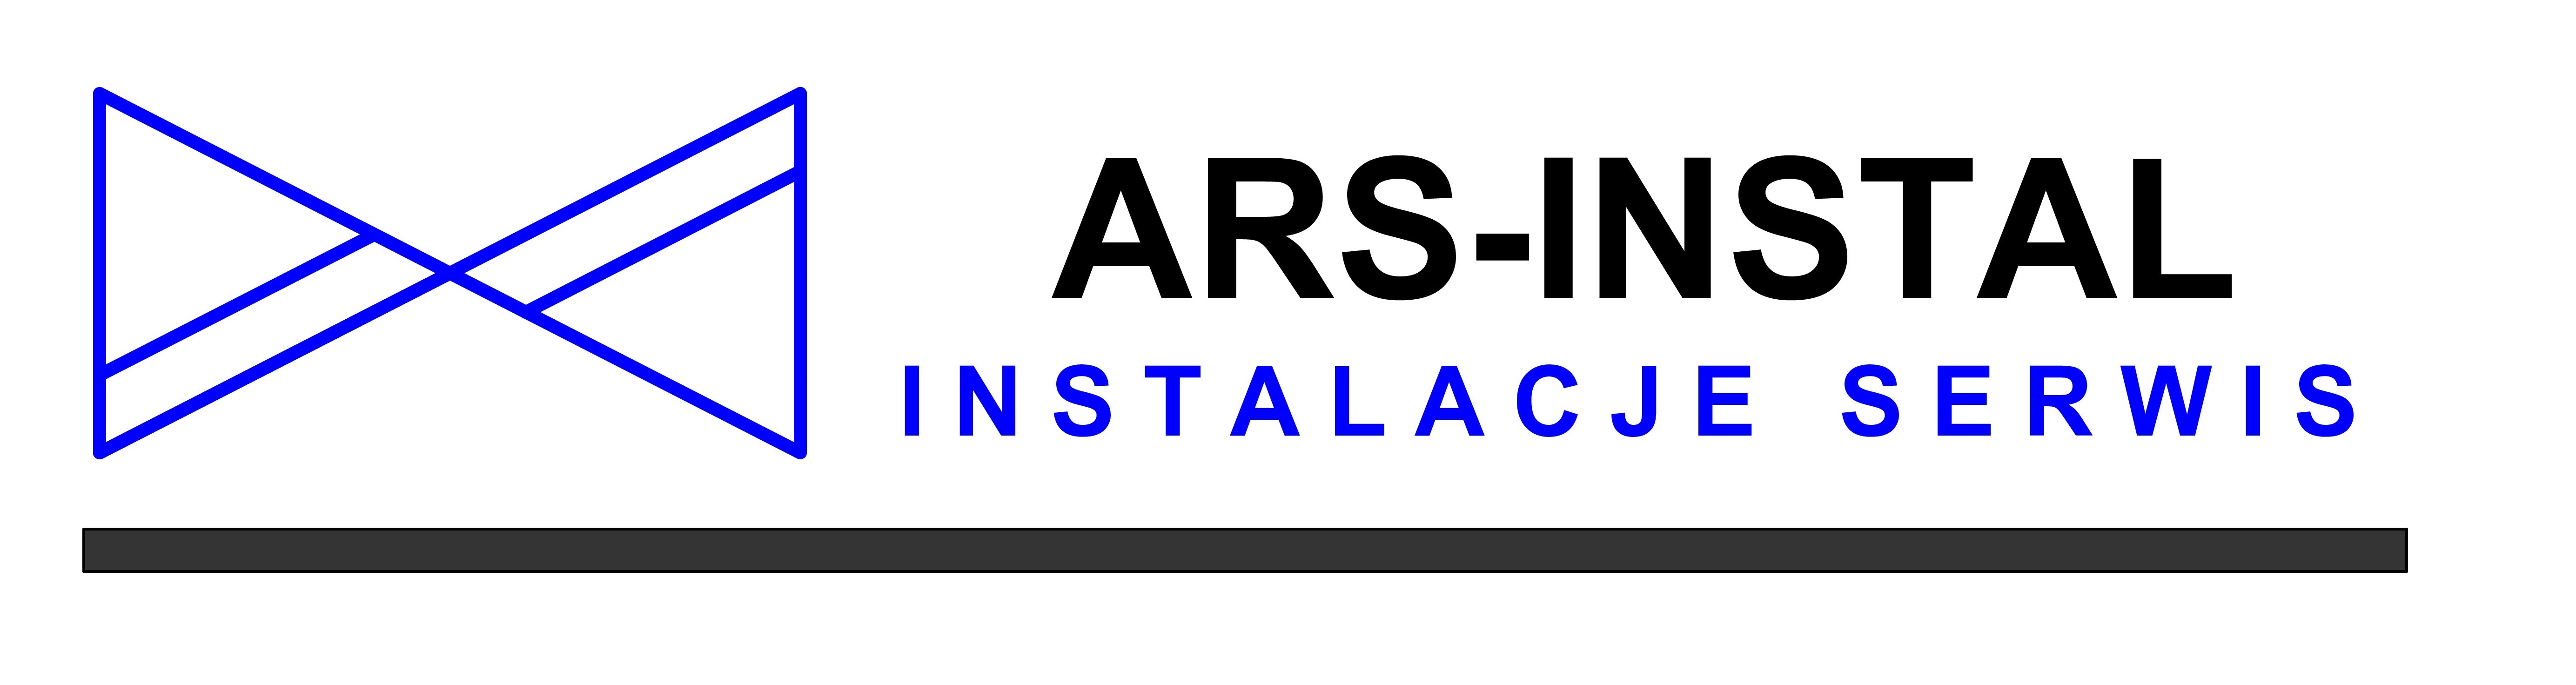 ARS-INSTAL